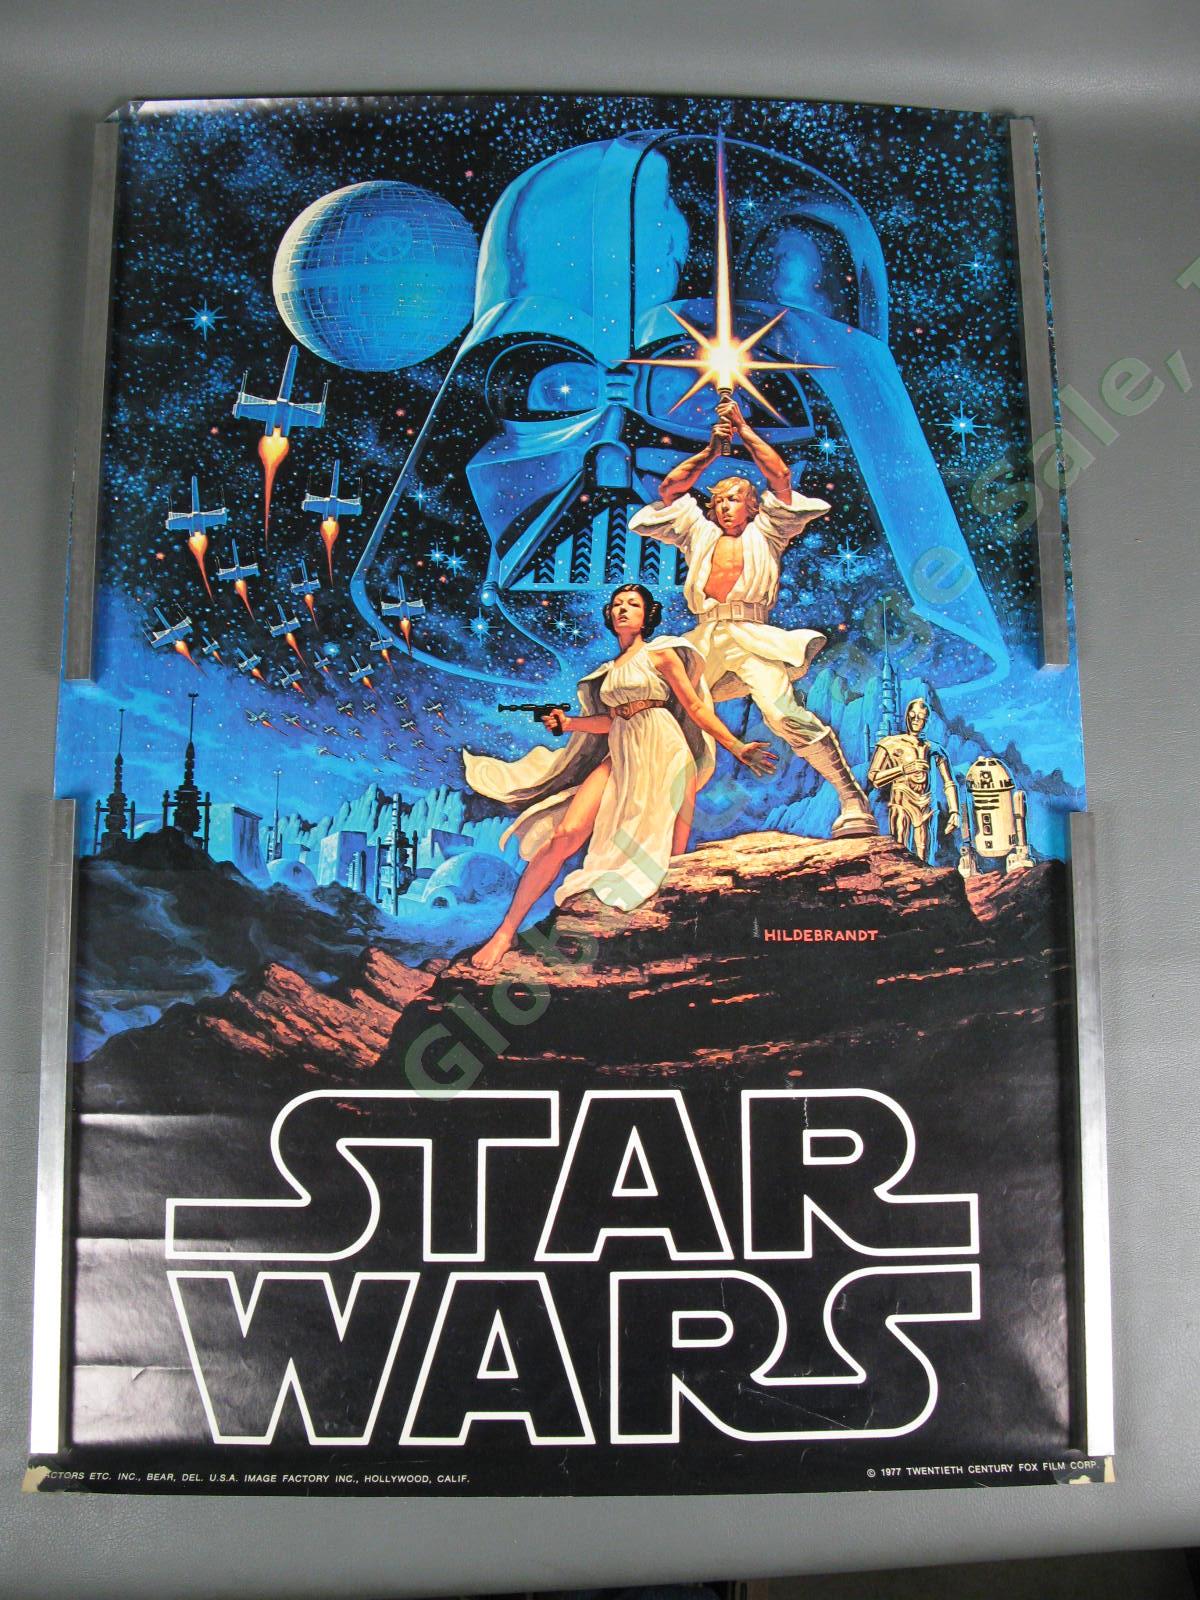 ORIGINAL 1977 Star Wars New Hope Hildebrandt 20th Century Fox Film Poster 28x20"